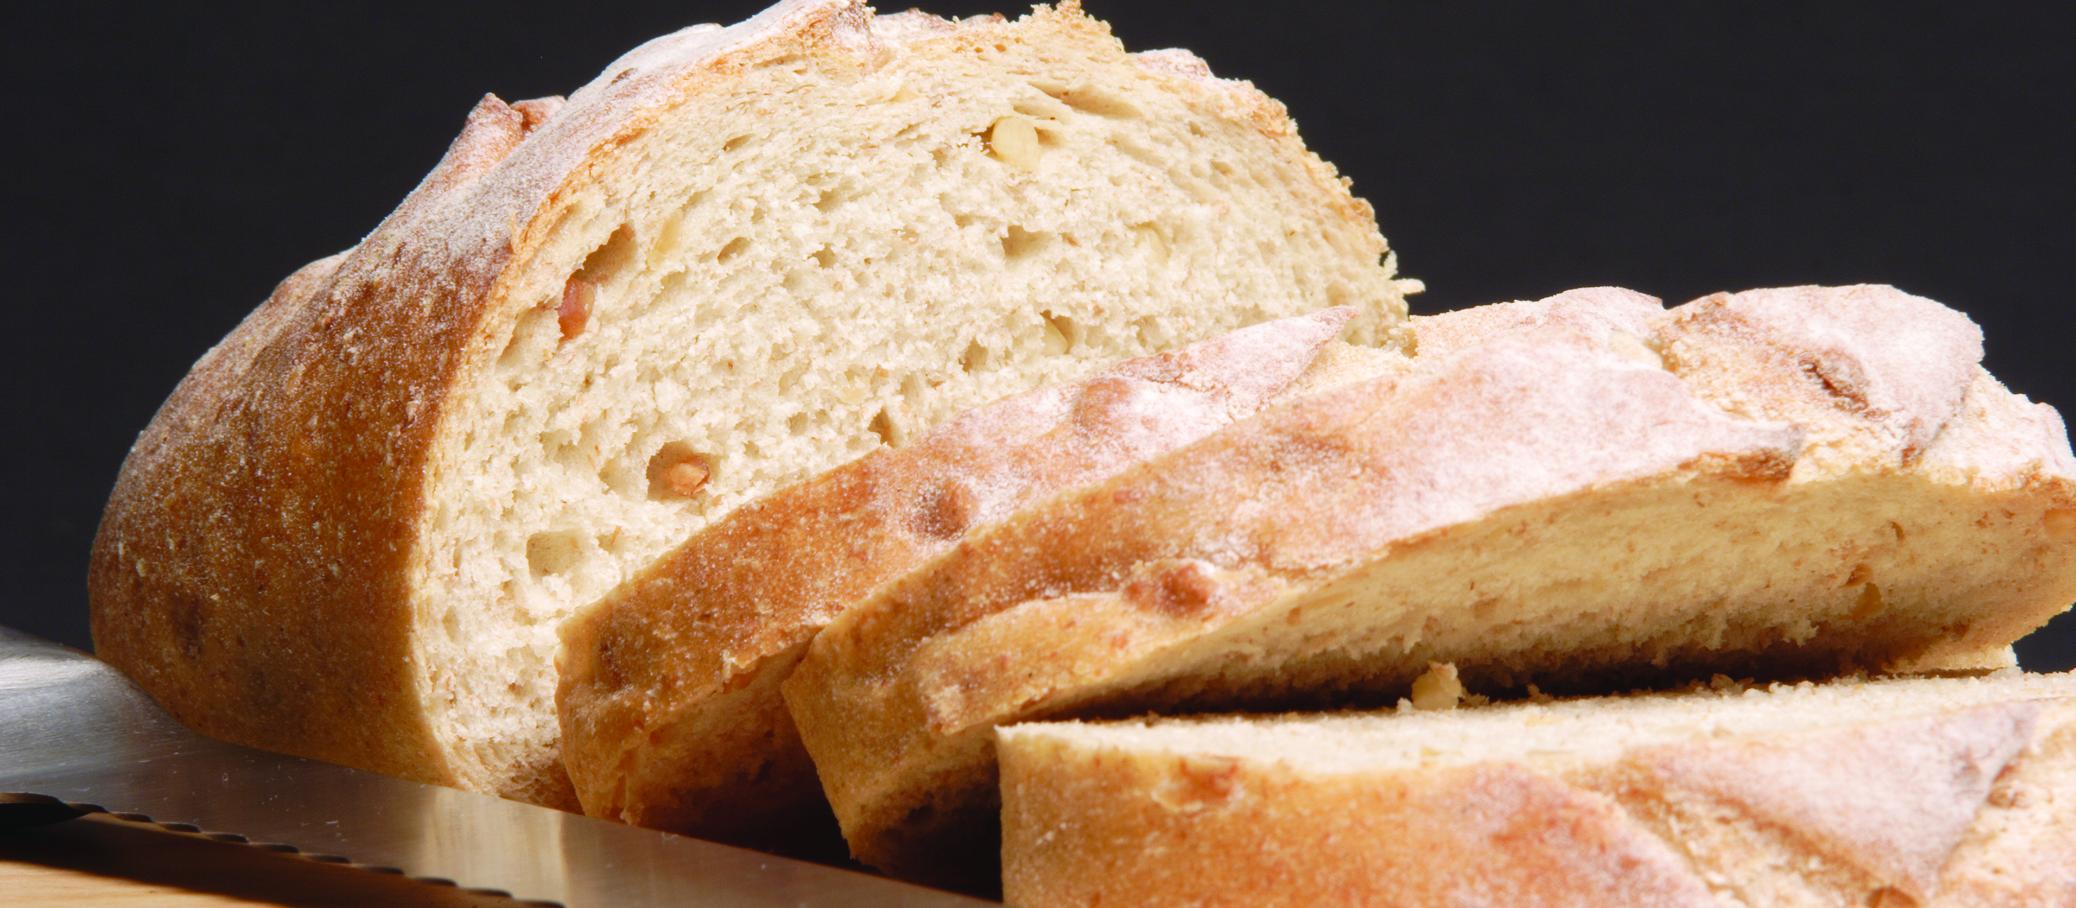 White Sliced Bread